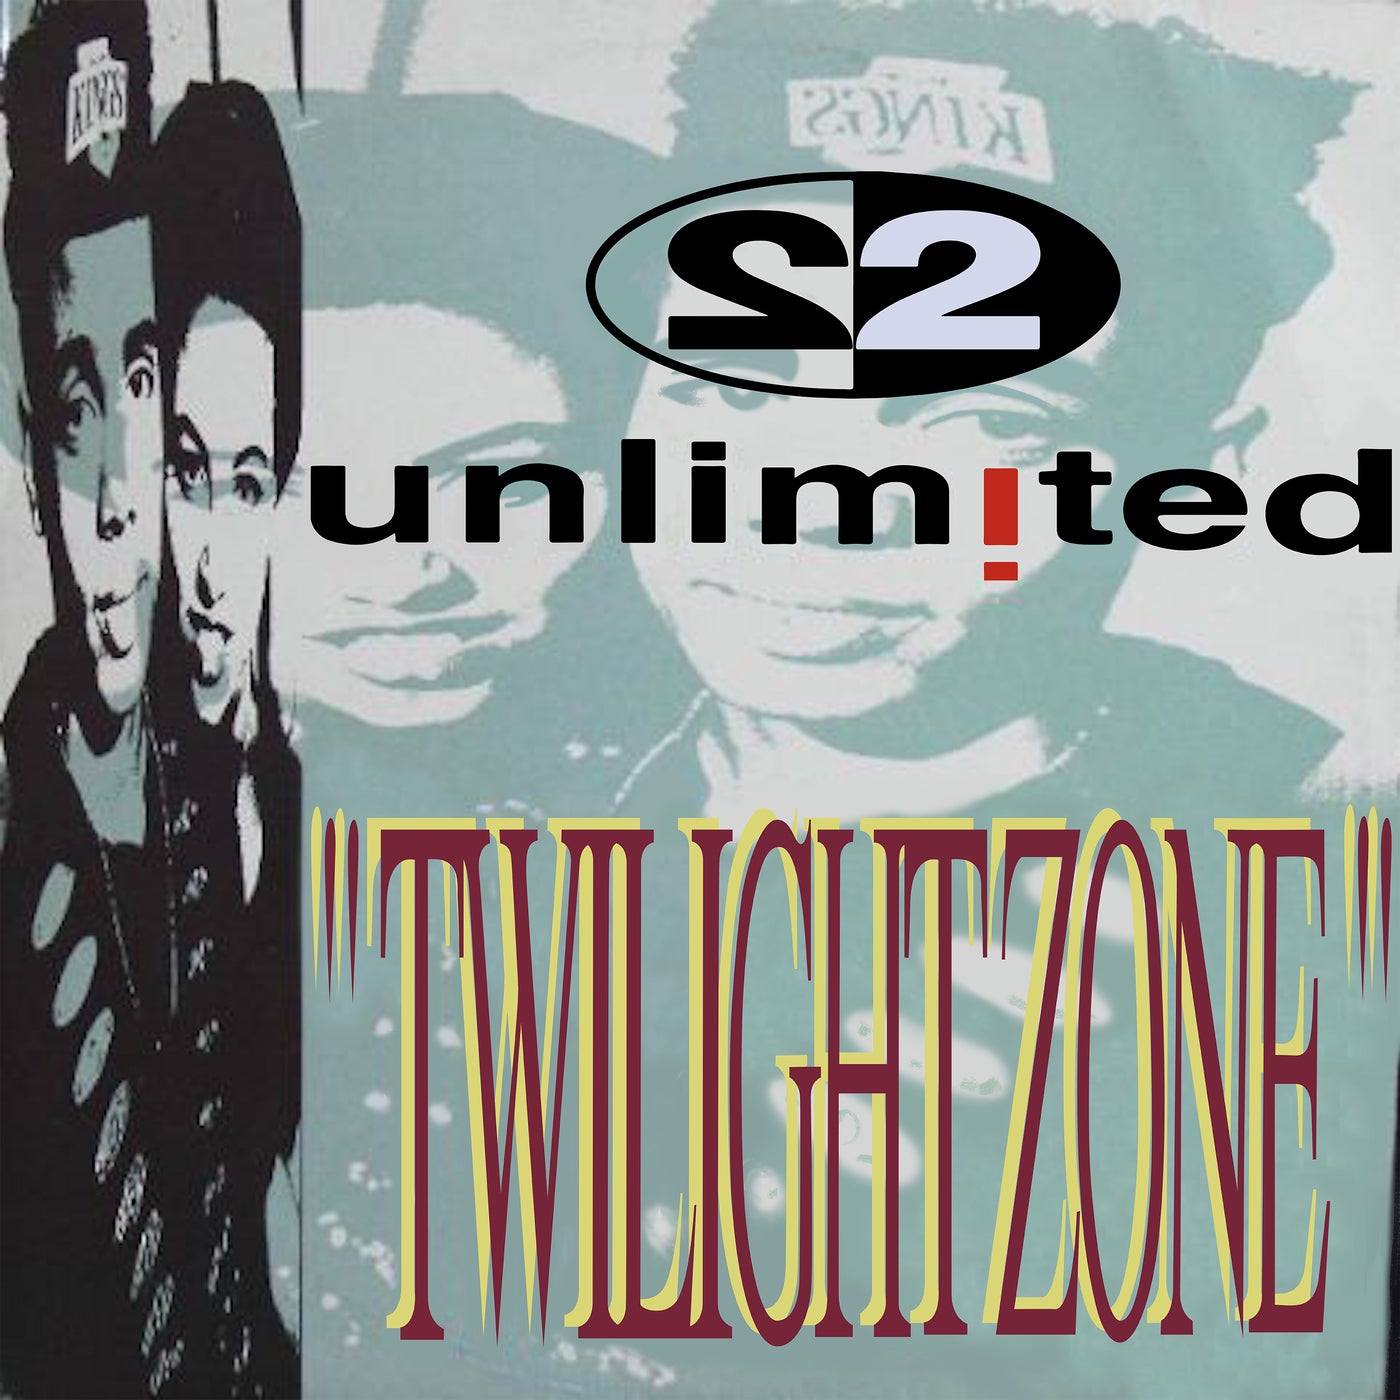 Twilight Zone (Remixes Pt. 2)